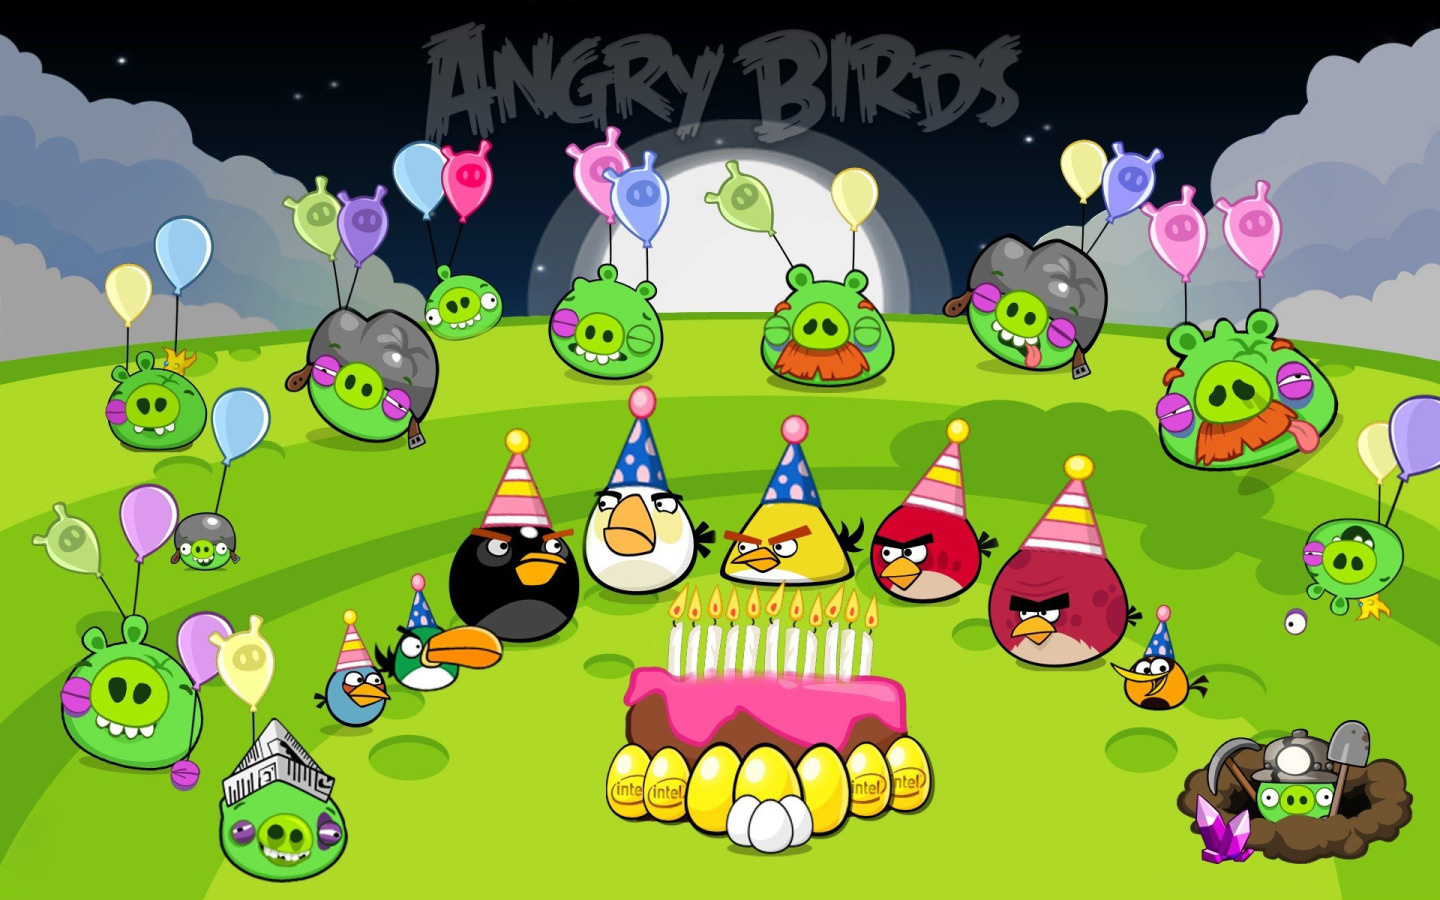 Игра енгрибердс. Энгри бердз злые птички. Бэкграунд игры Angry Birds Seasons. Энгри бердз 1.6.3. Энгри бердз Сизонс 2010.